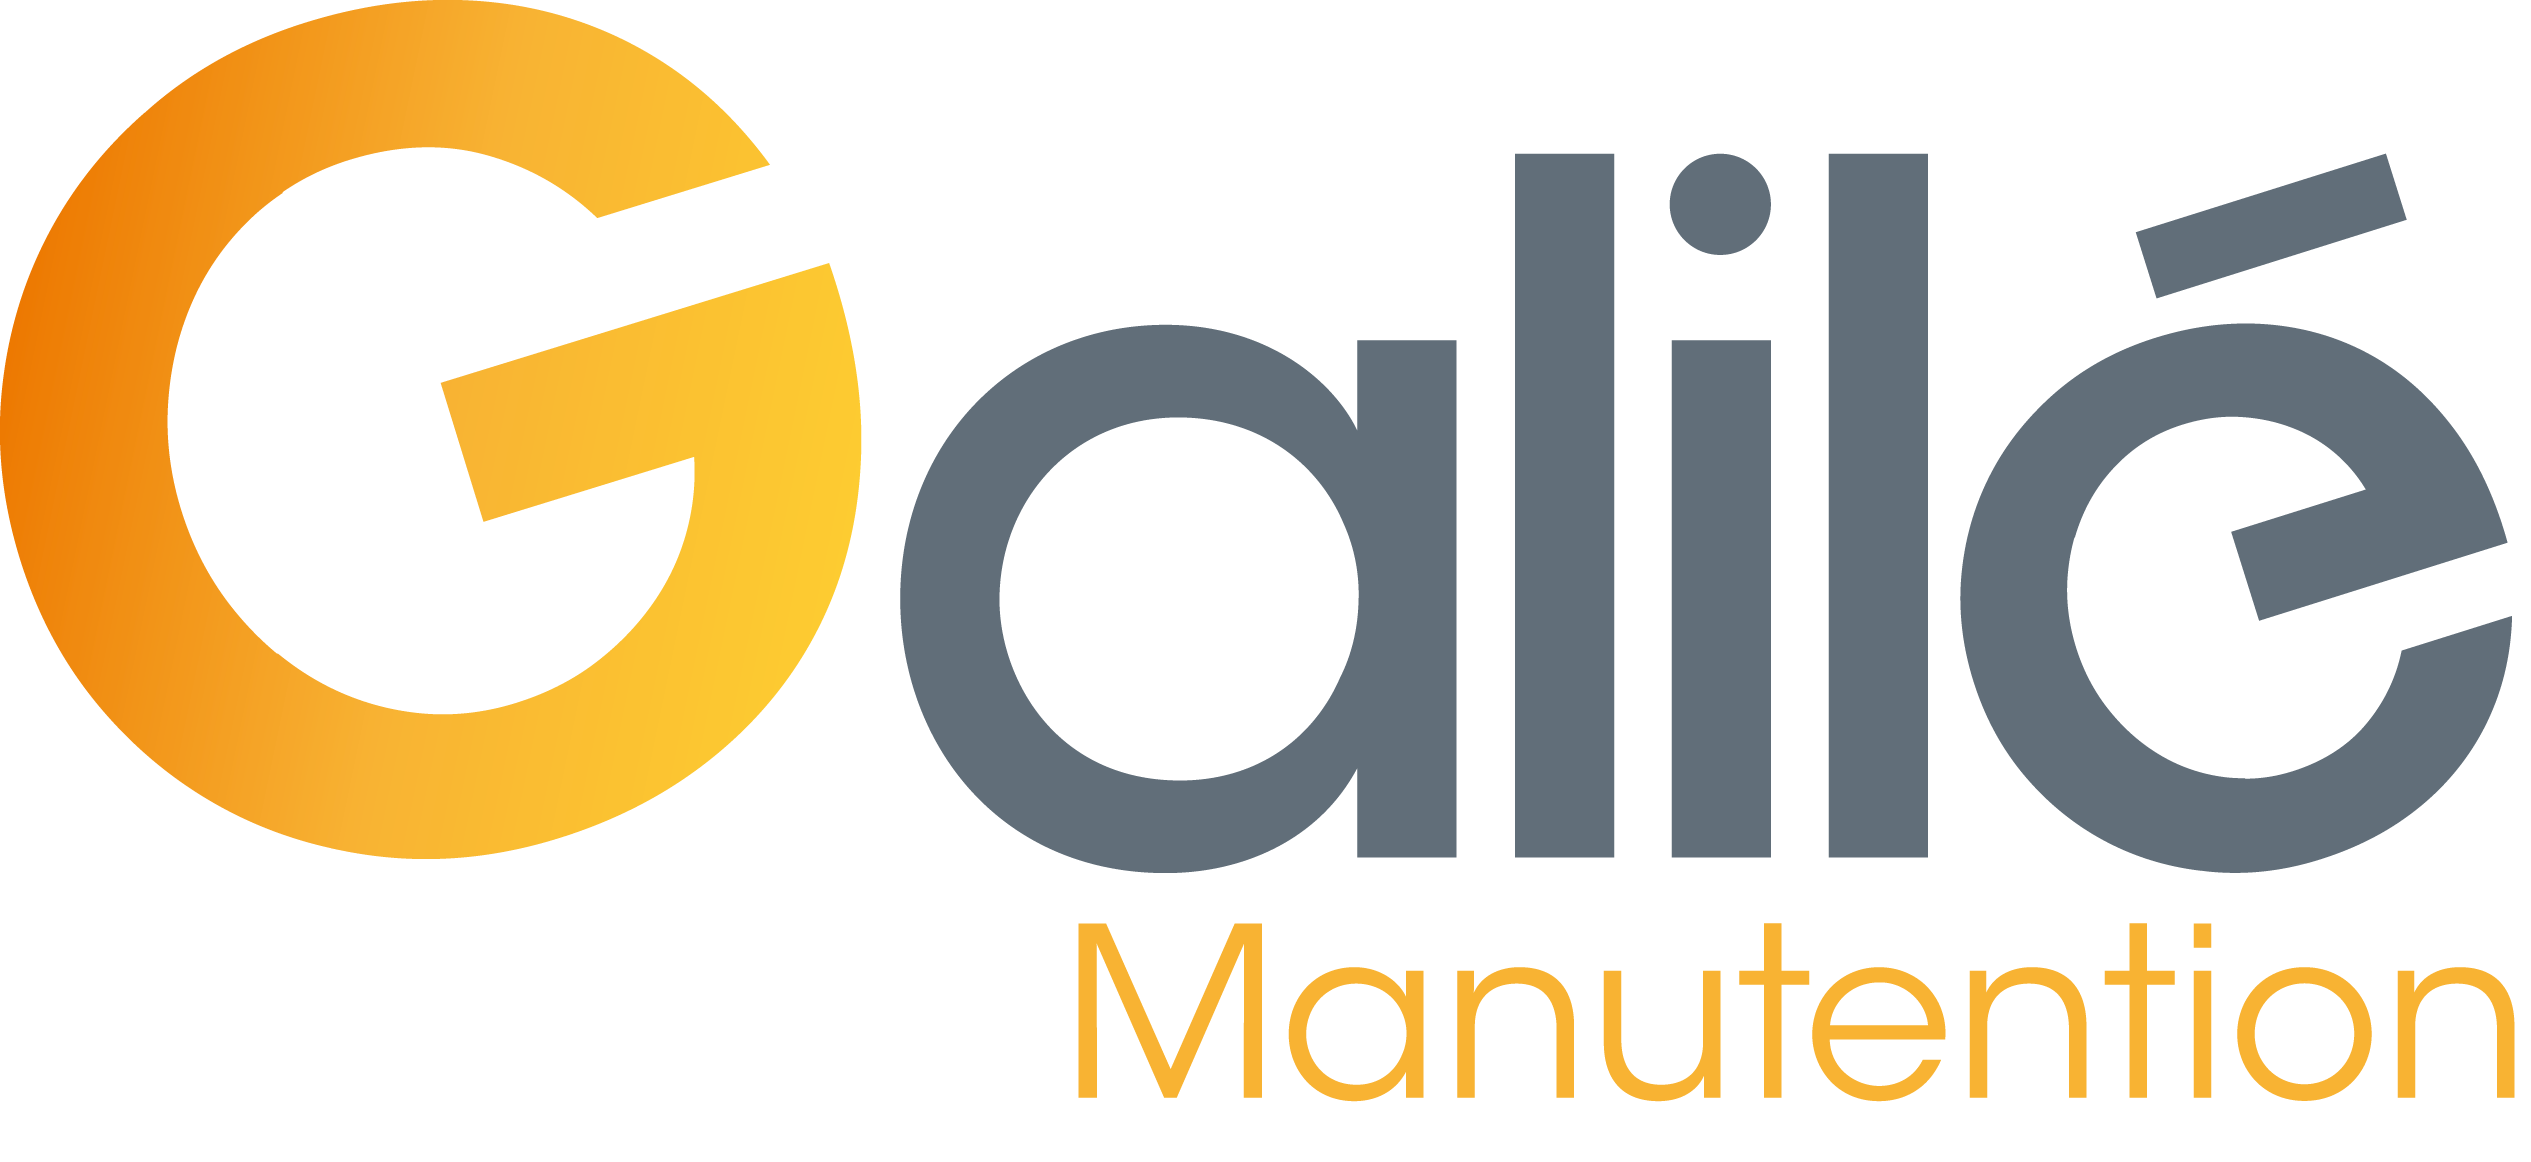 Logo Groupe Galilé - manutention